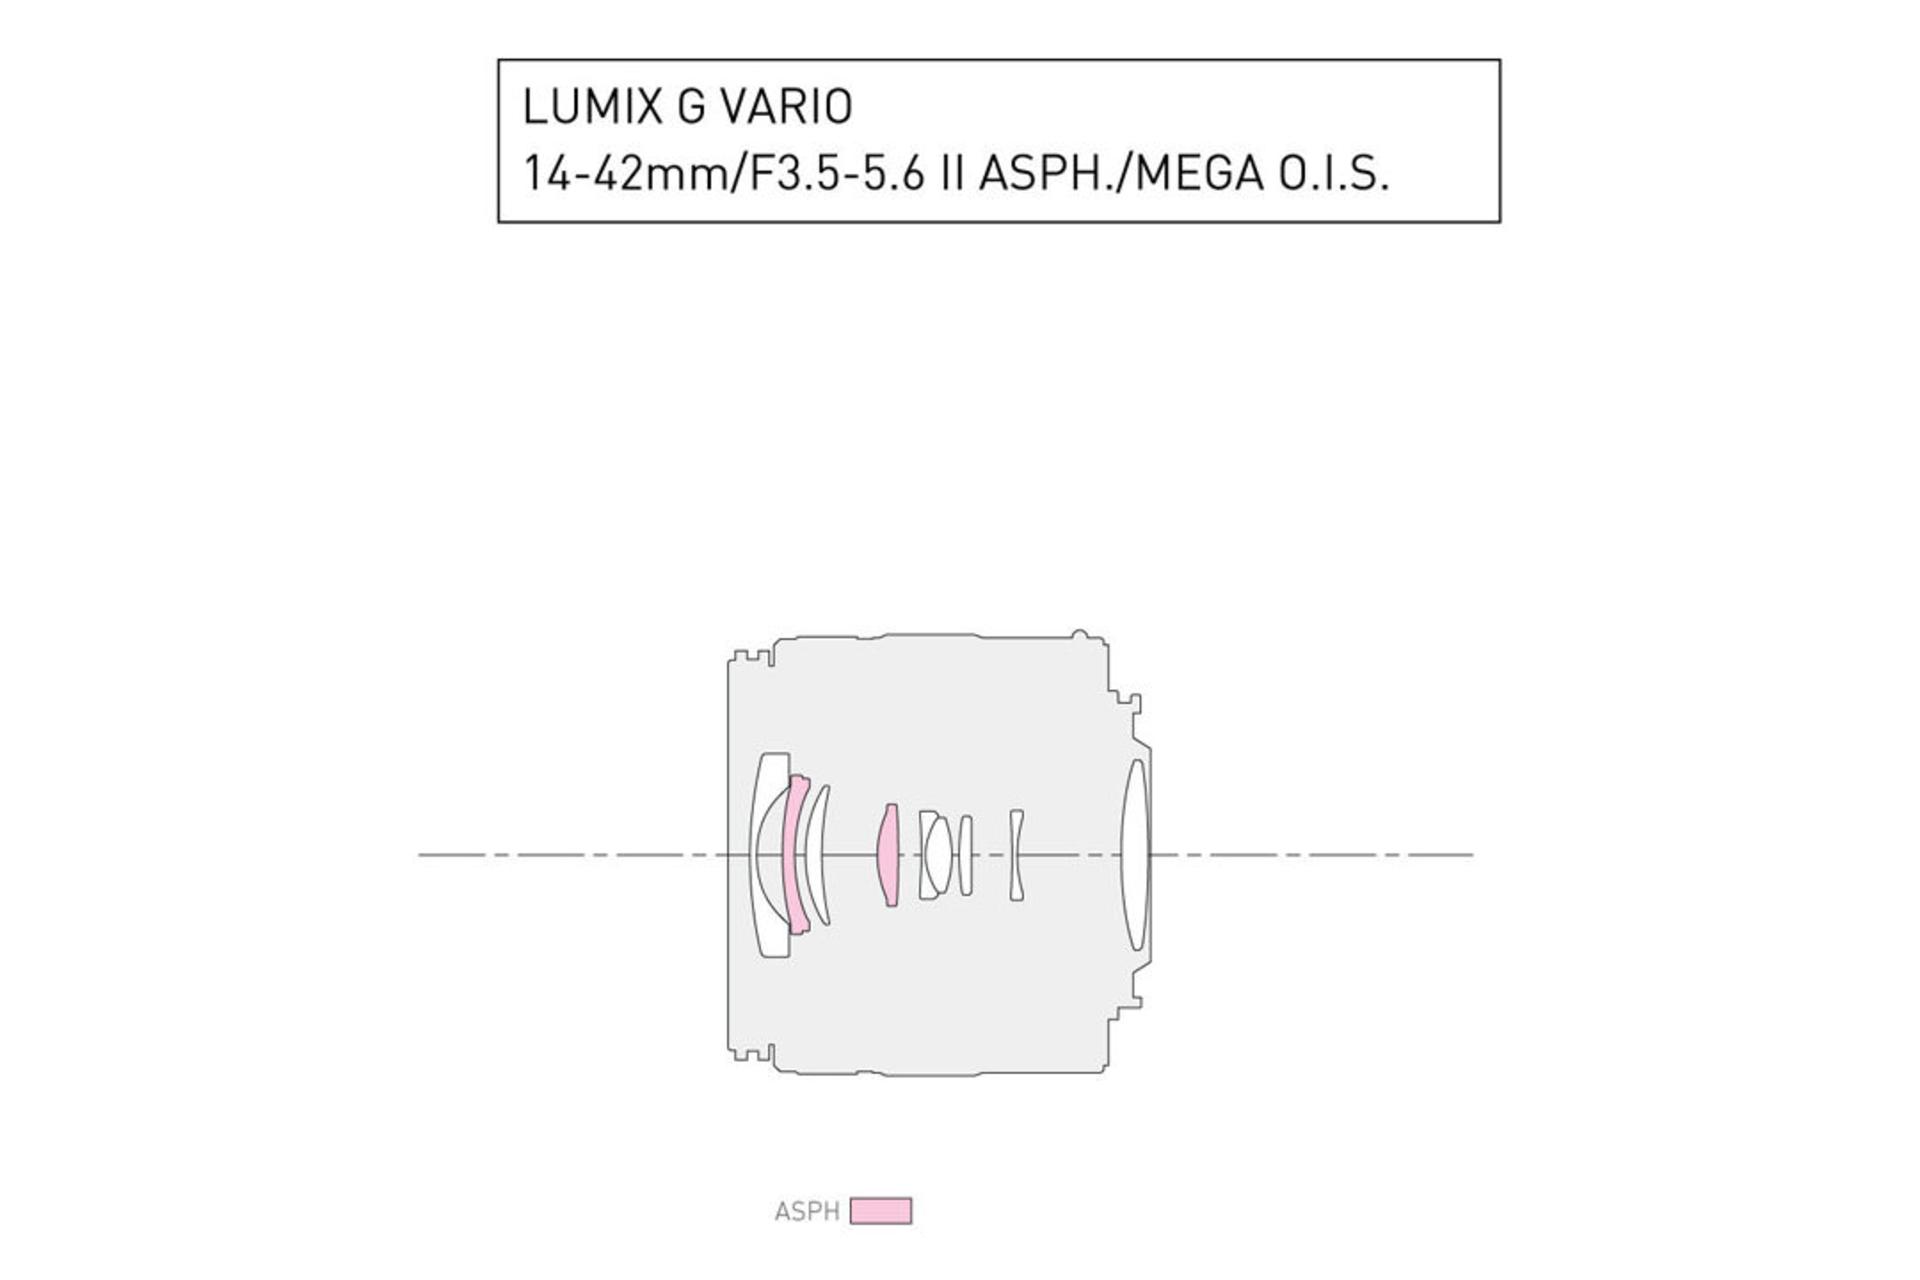 Panasonic Lumix G Vario 14-42mm F3.5-5.6 II ASPH Mega OIS	